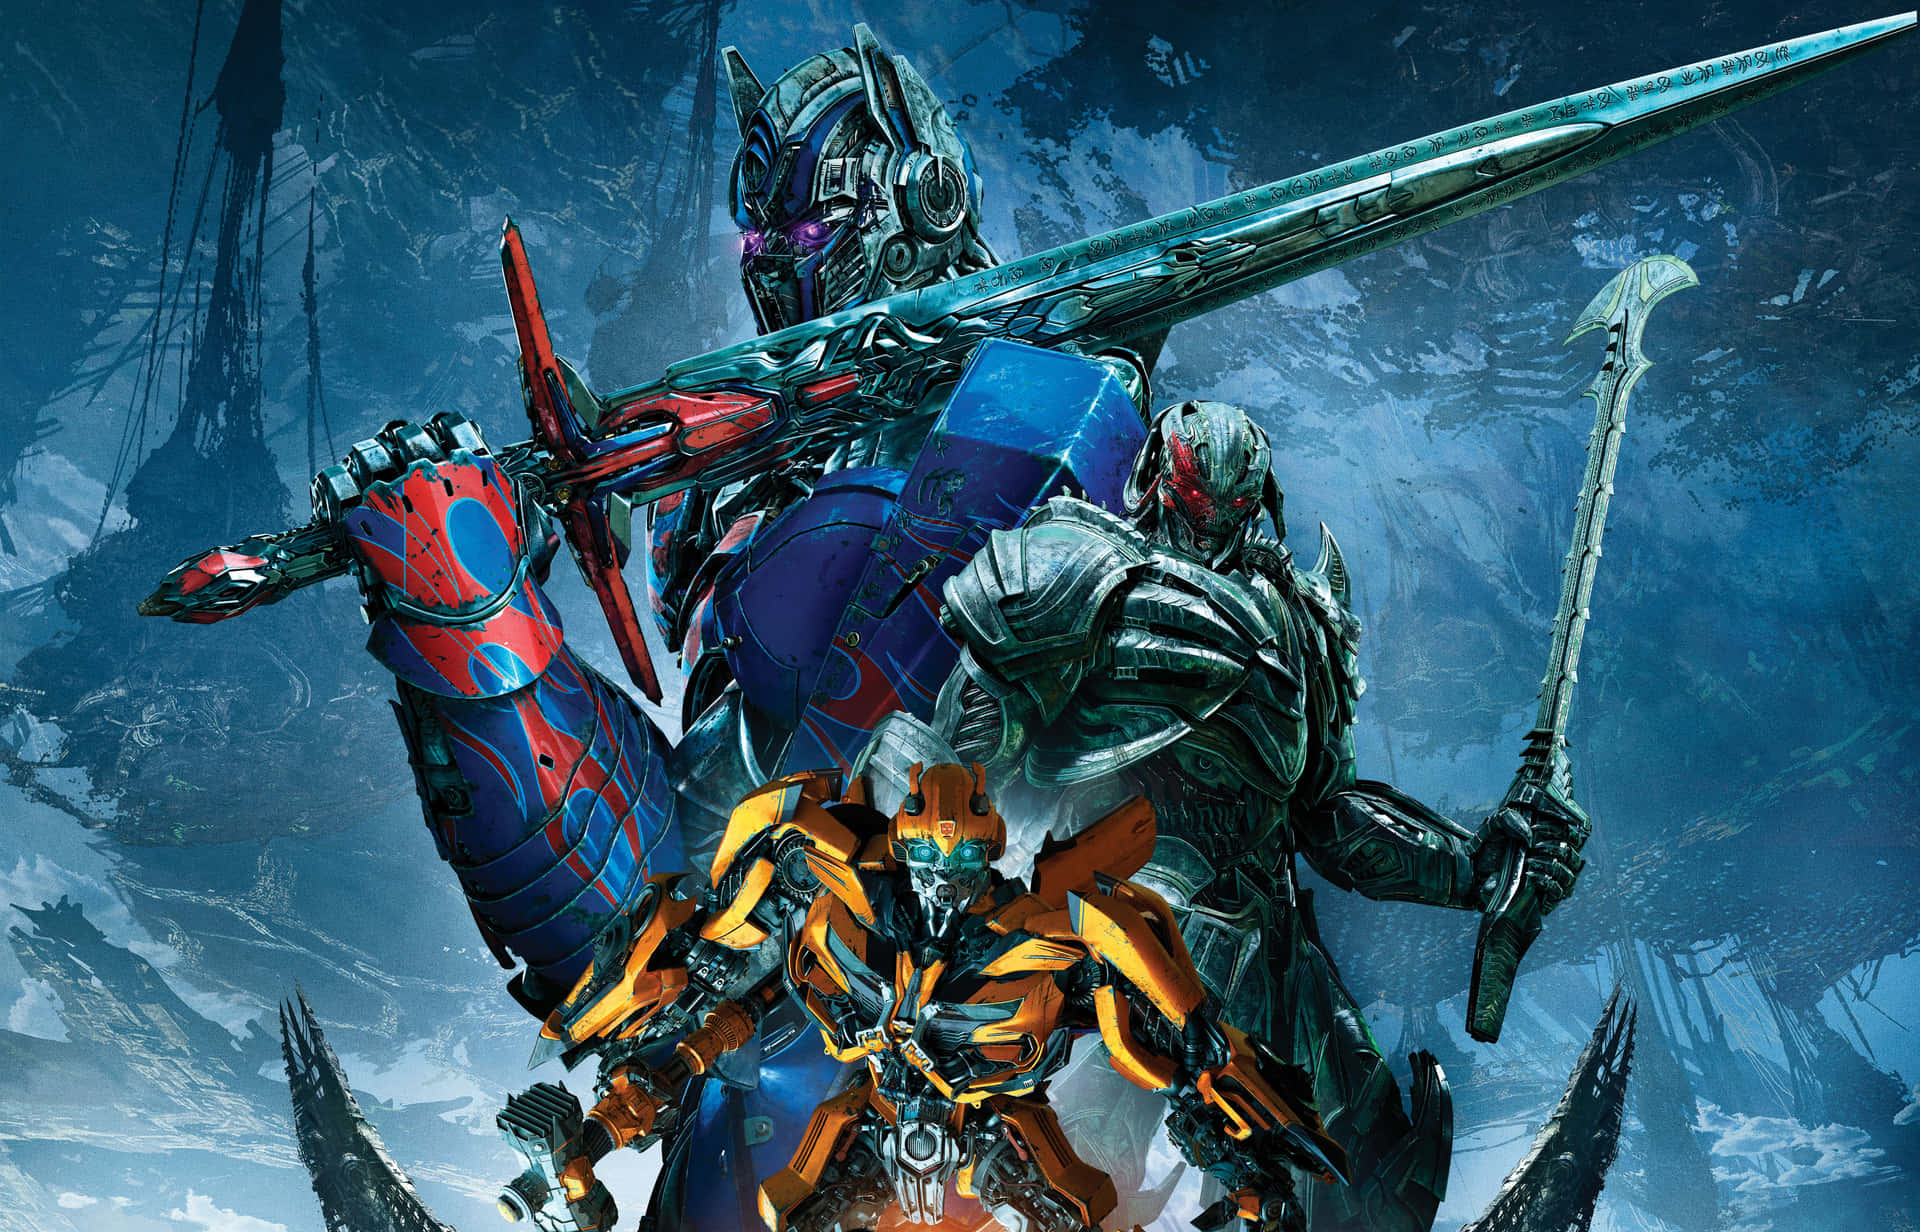 Oplev kraften af Prime med denne 4K Optimus Prime-tapet! Wallpaper